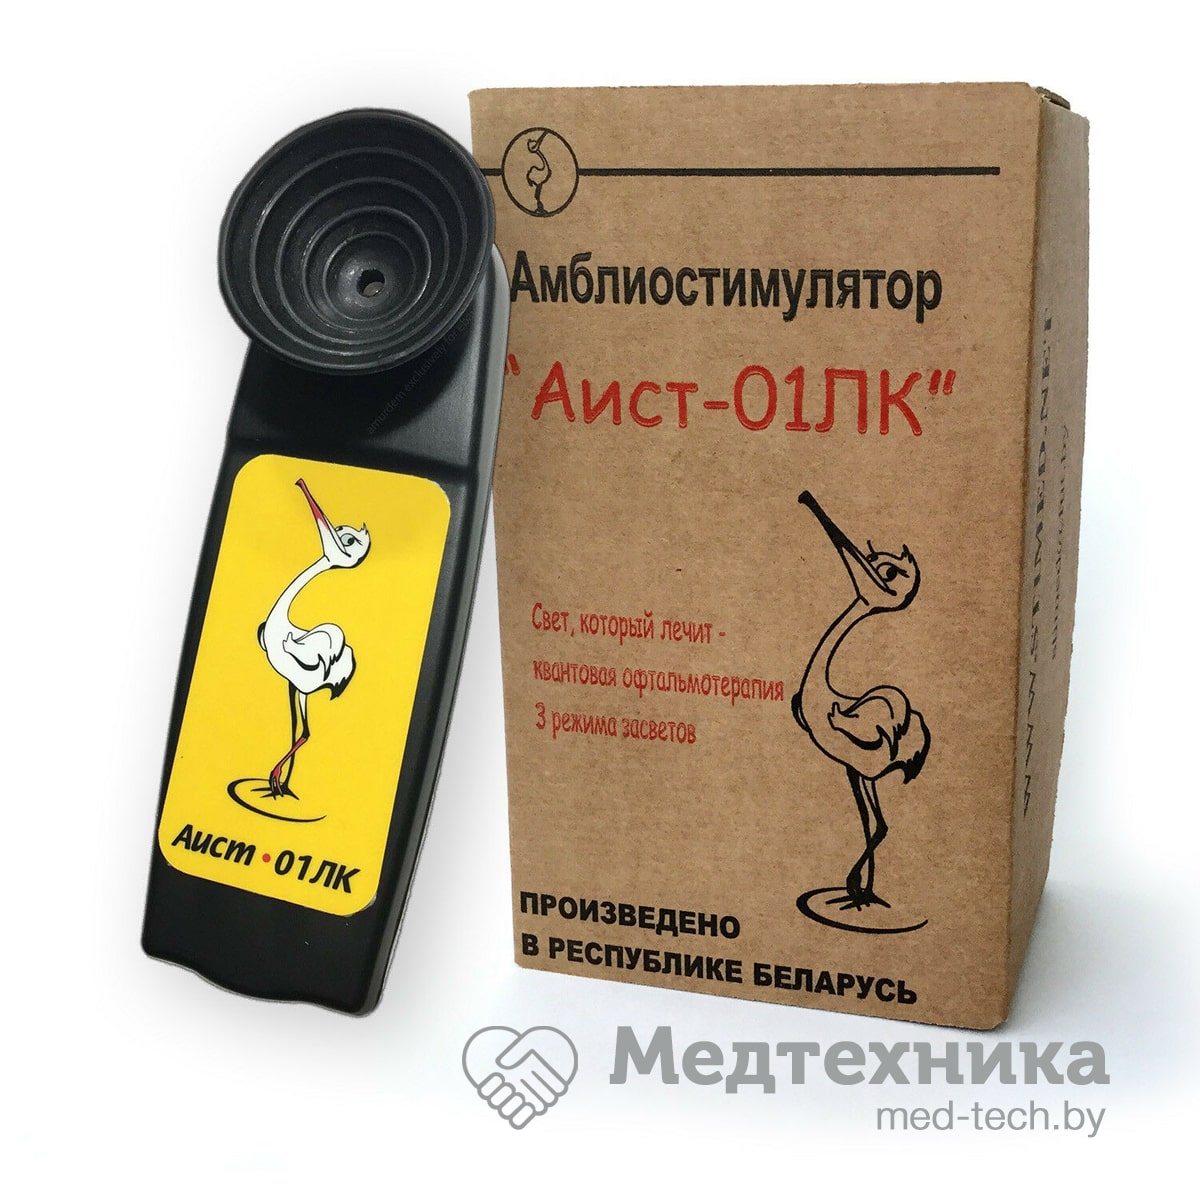 картинка Амблиостимулятор "Аист-01ЛК" от РУП Медтехника